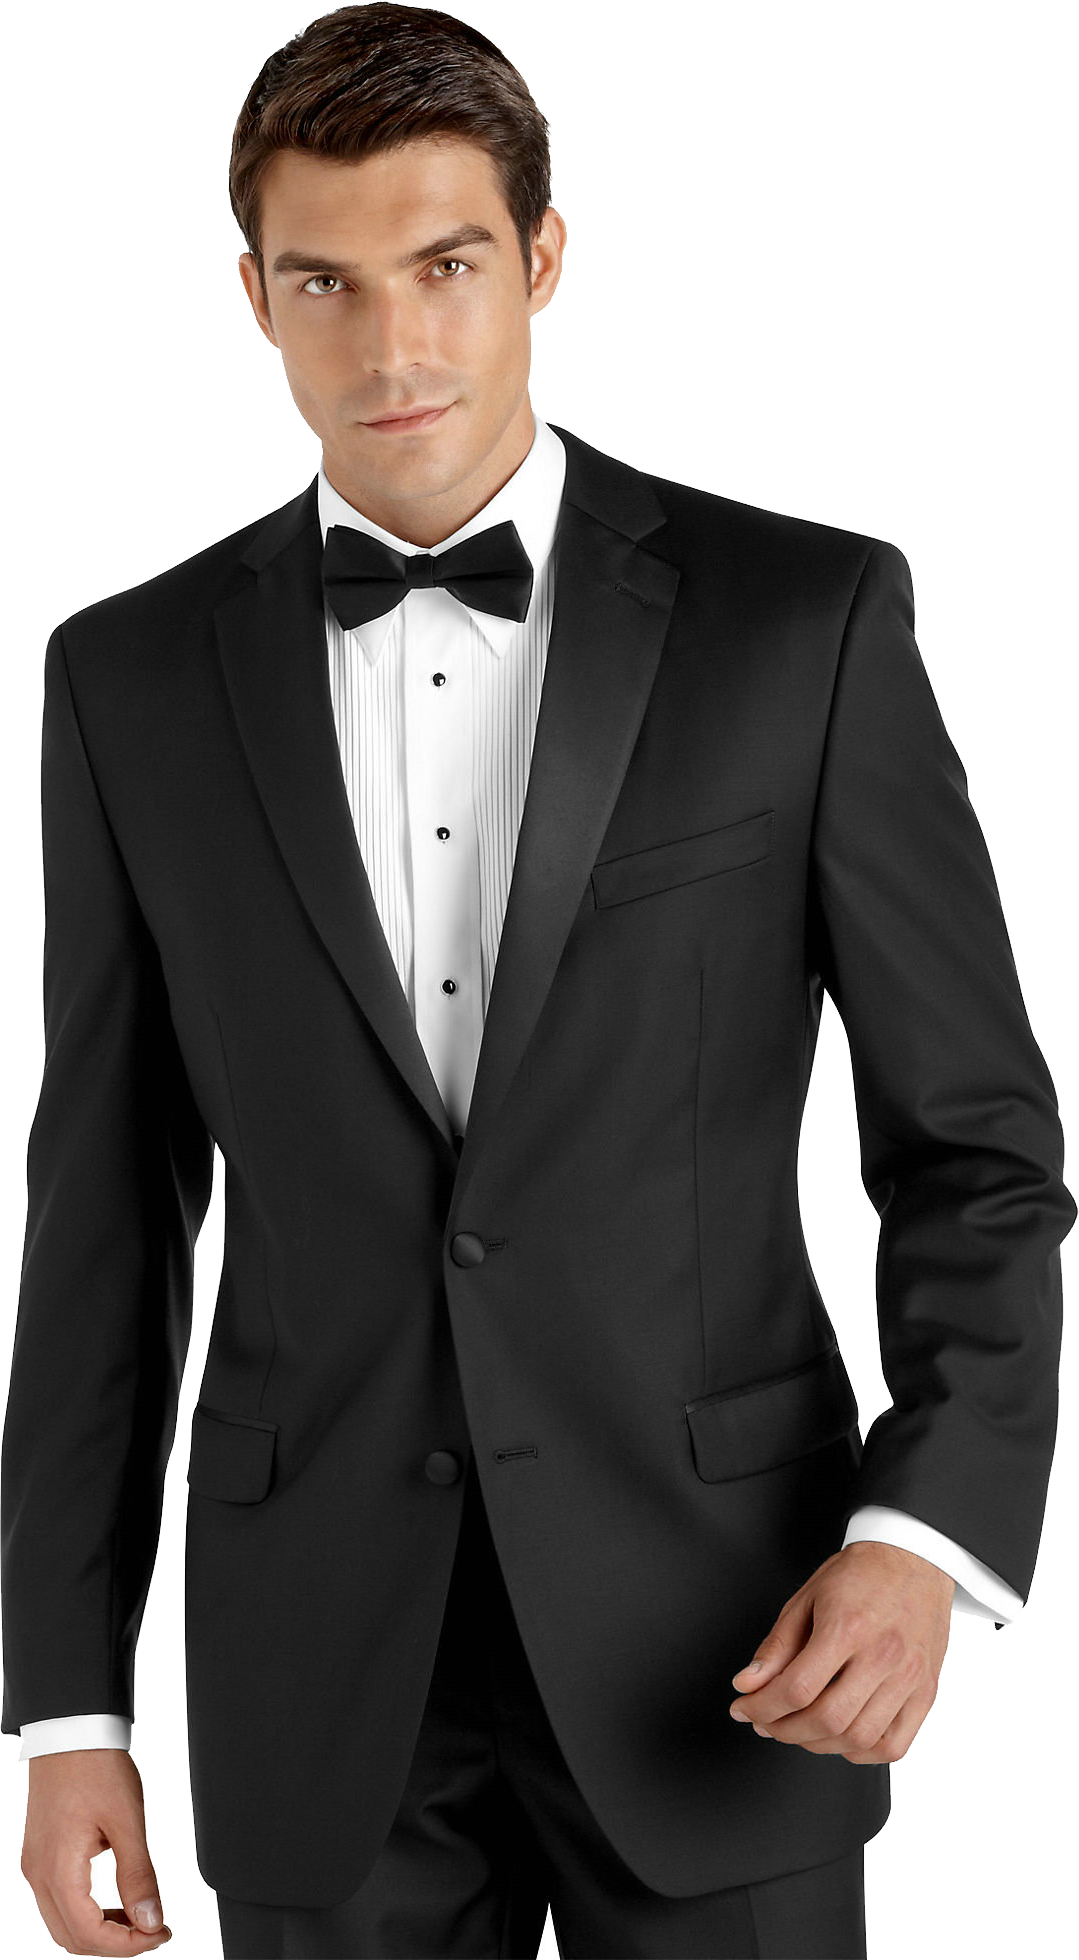 Black Suit PNG Image